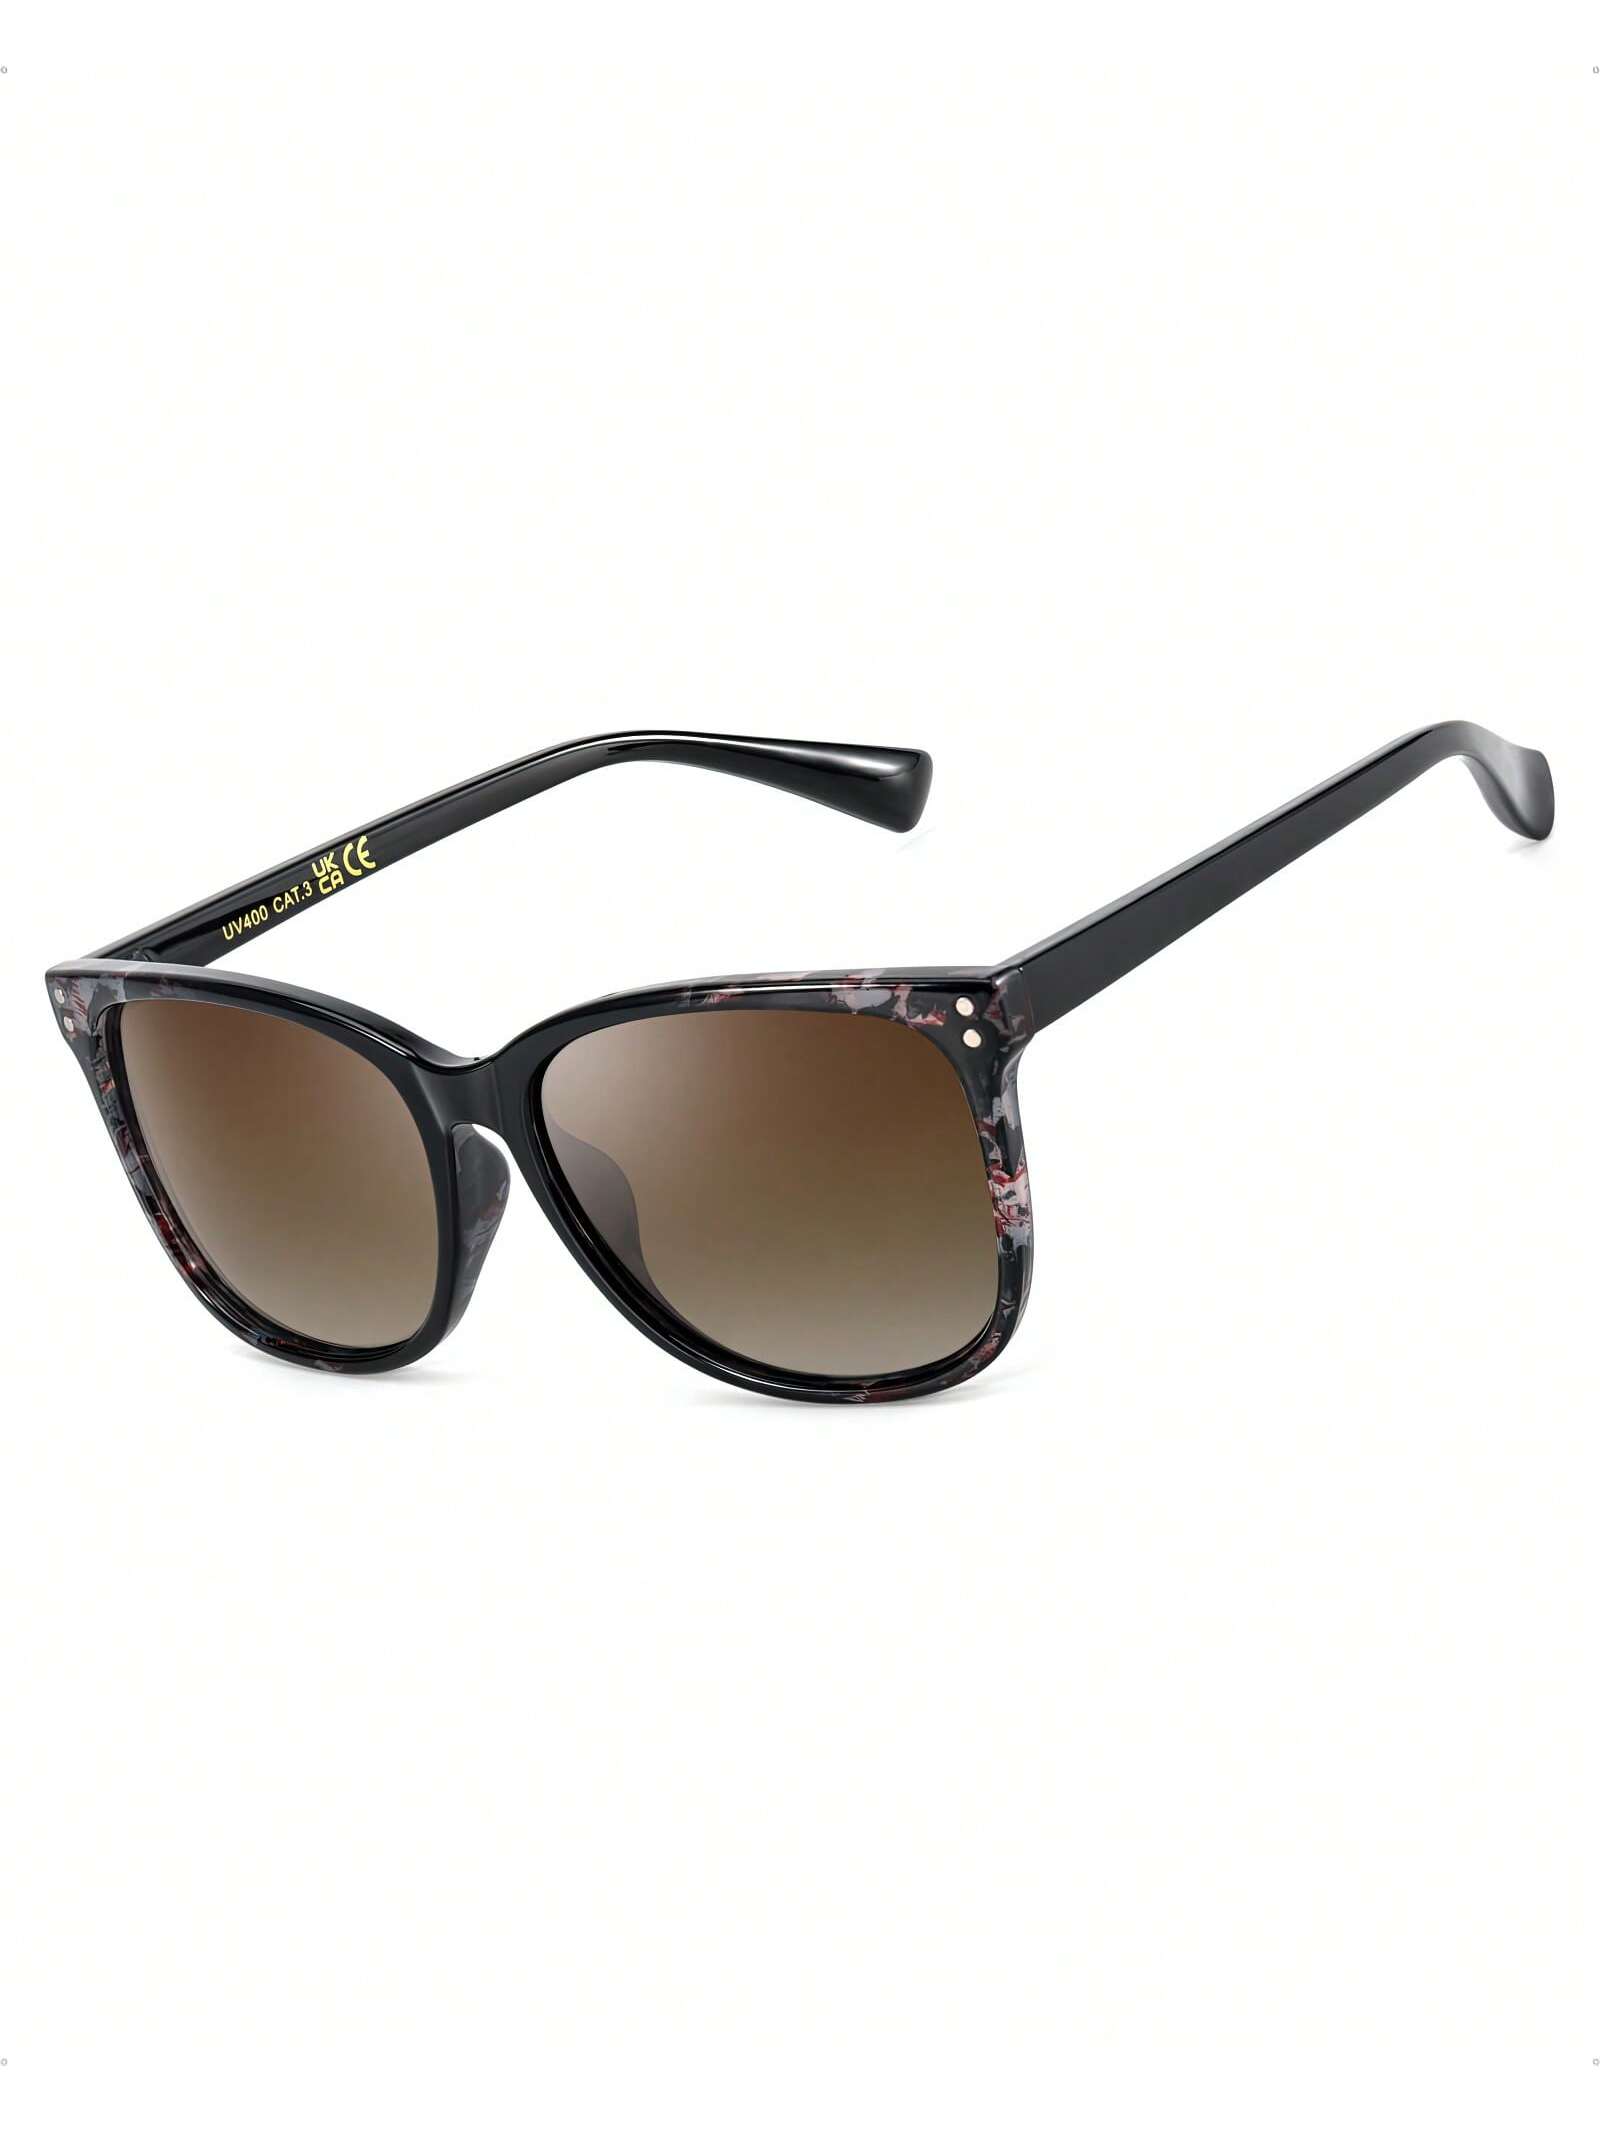 Поляризованные квадратные солнцезащитные очки Lvioe для женщин солнцезащитные очки с поляризацией 08134 c9 31